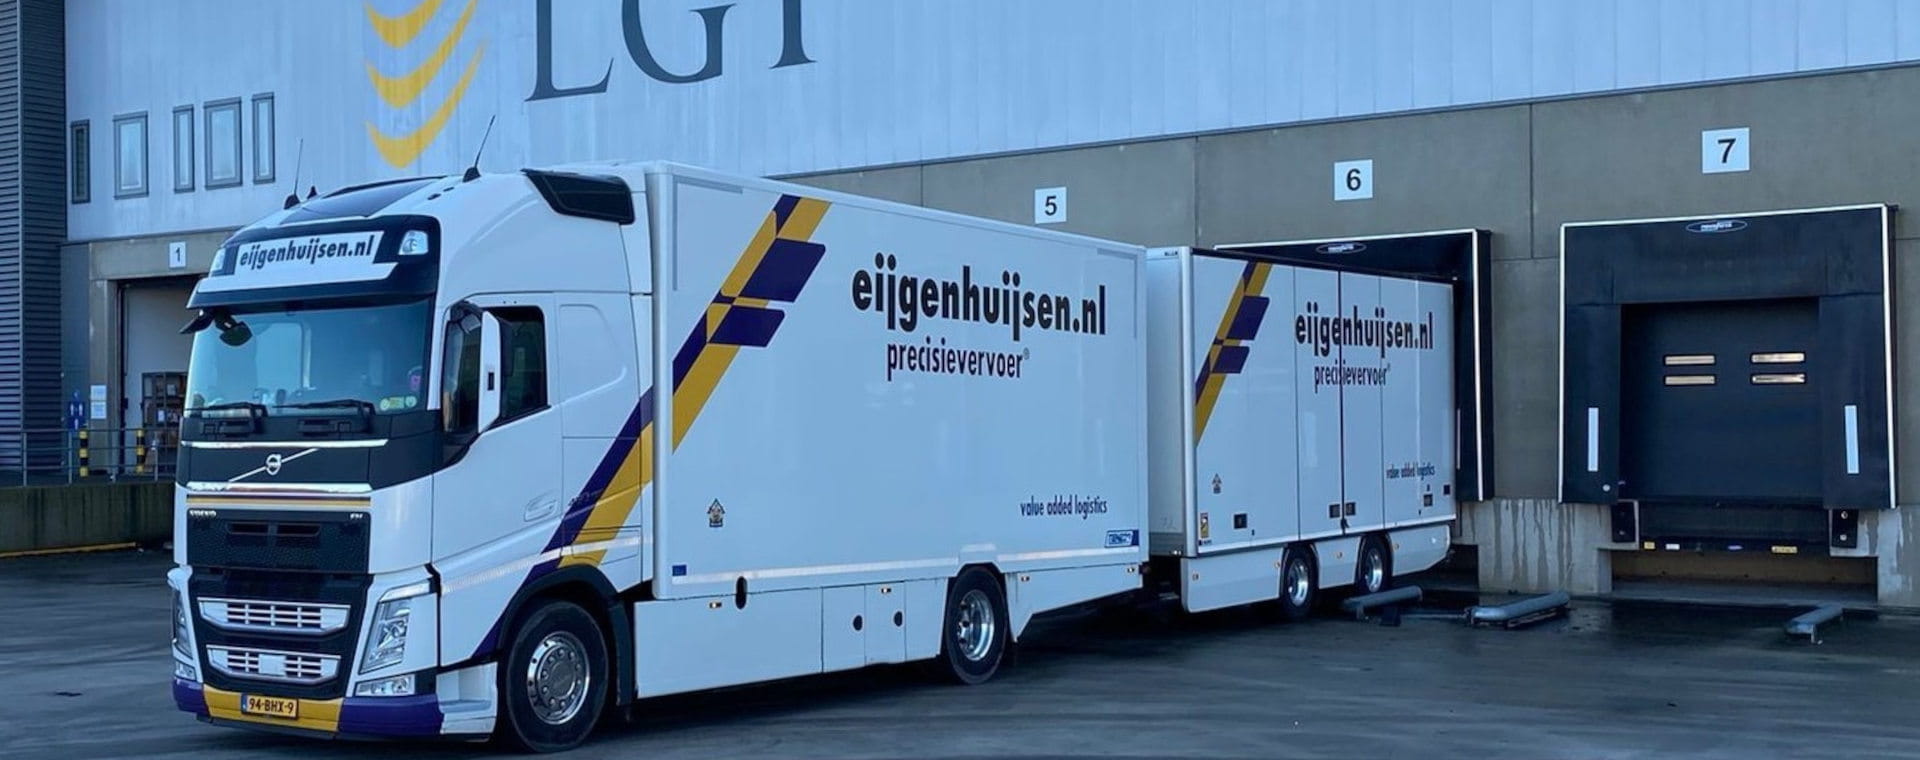 Elanders buys Dutch company | LGI